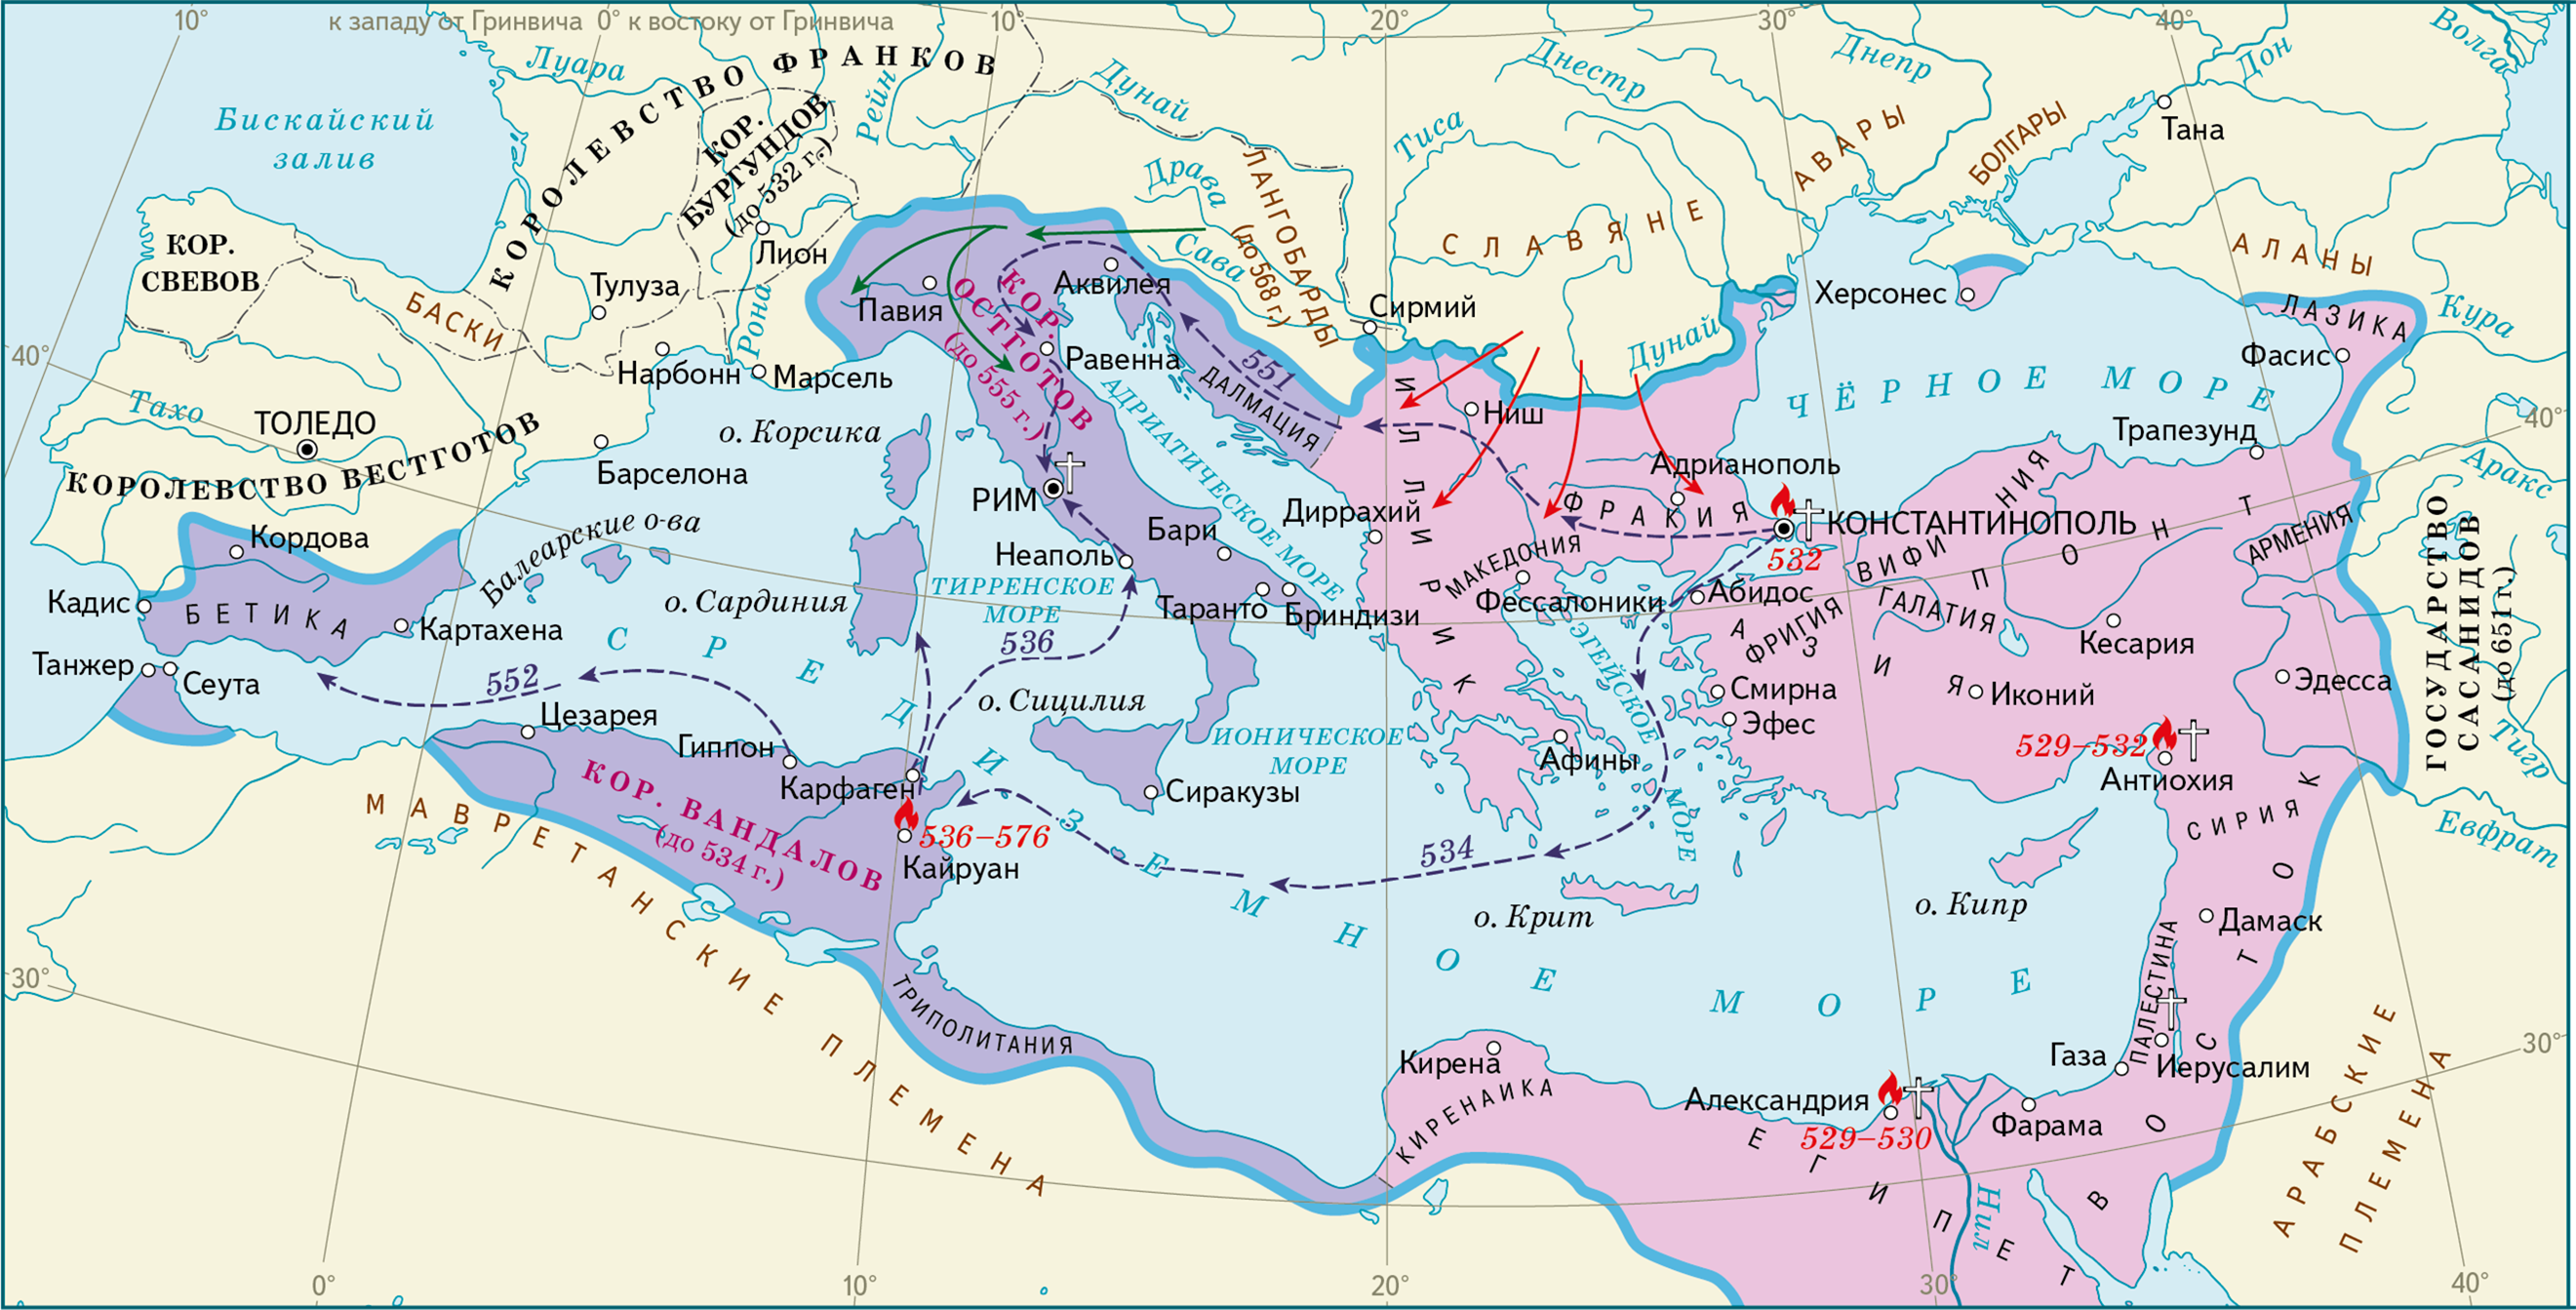 Где византия на карте. Византийская Империя Юстиниан карта. Византийская Империя карта 11 века. Восточная Римская Империя при евстиниане. Карта Византийской империи в 6 веке.